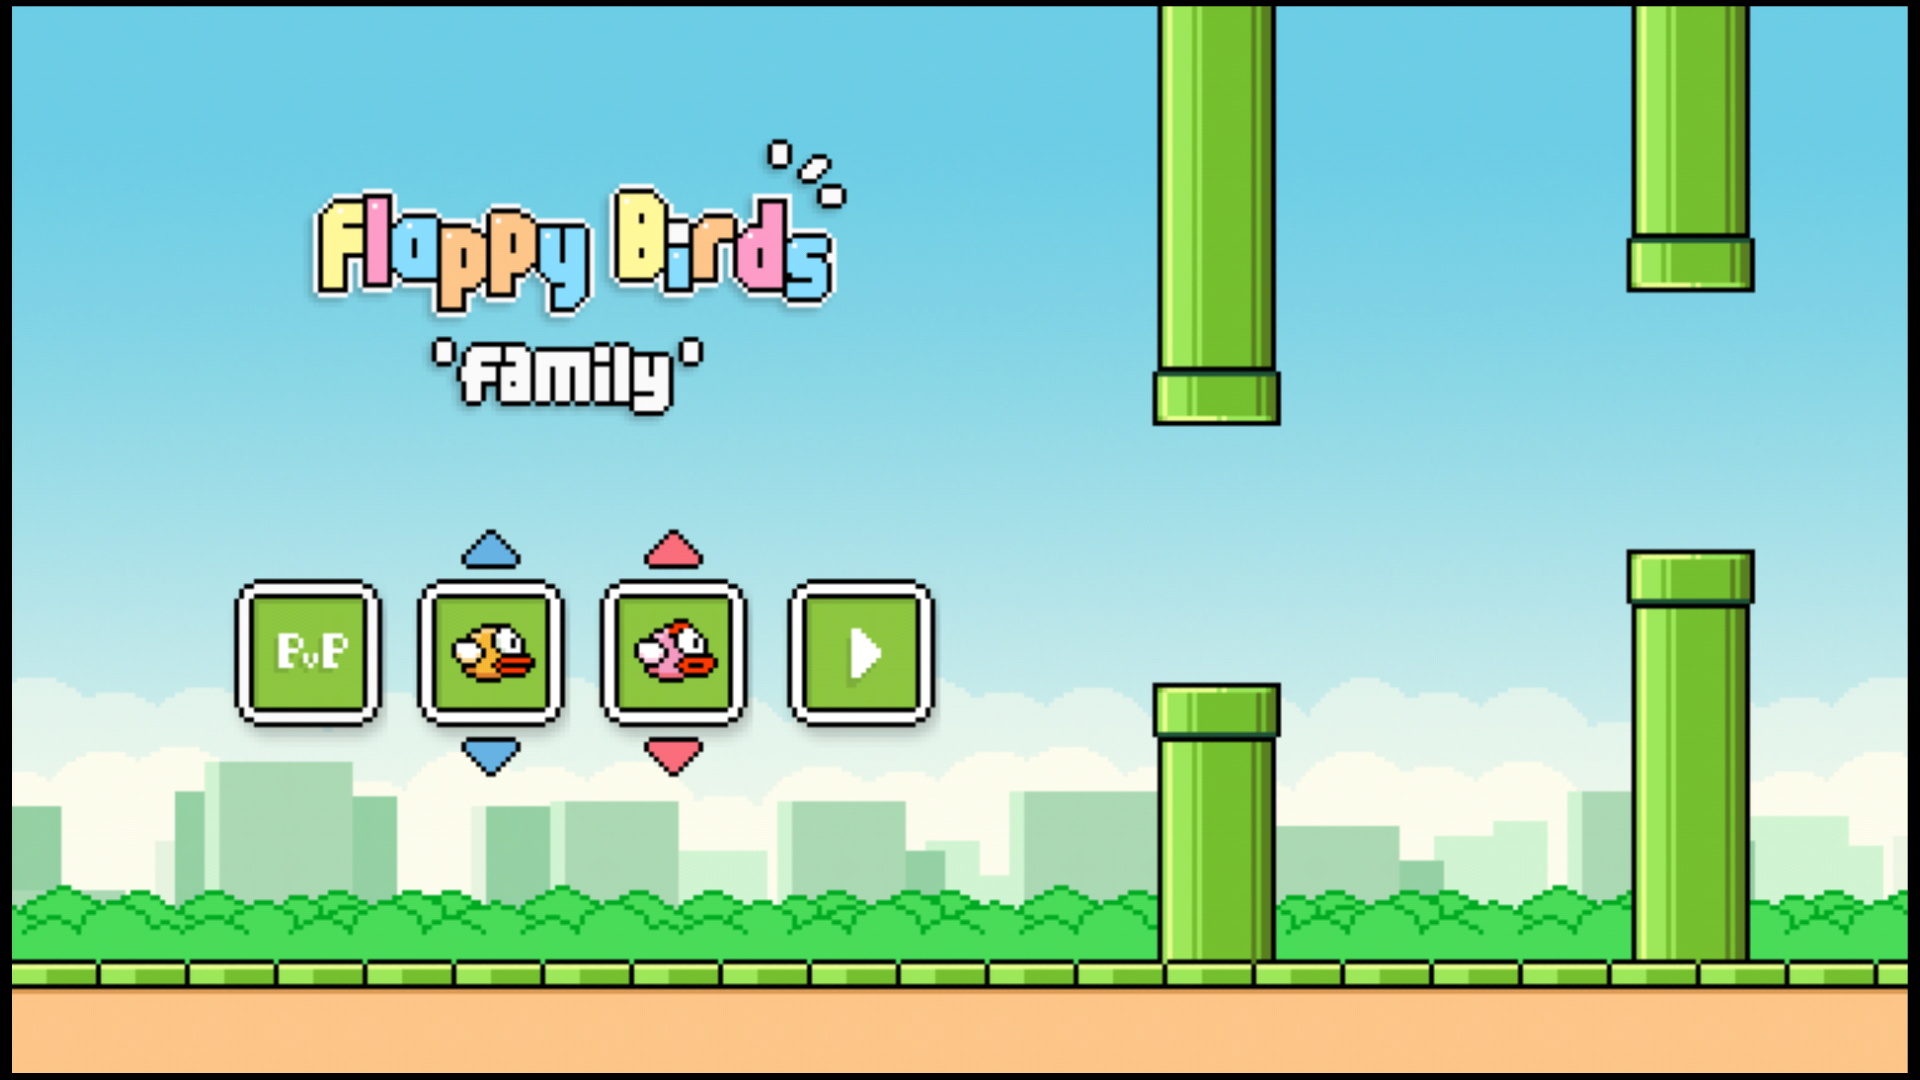 Flappy Bird Wallpapers là một trong những loại hình nền điện thoại hấp dẫn nhất và được yêu thích. Hãy thưởng thức hình ảnh đầy màu sắc và vui tươi về đề tài này và lựa chọn cho mình một hình nền ưng ý nhất!